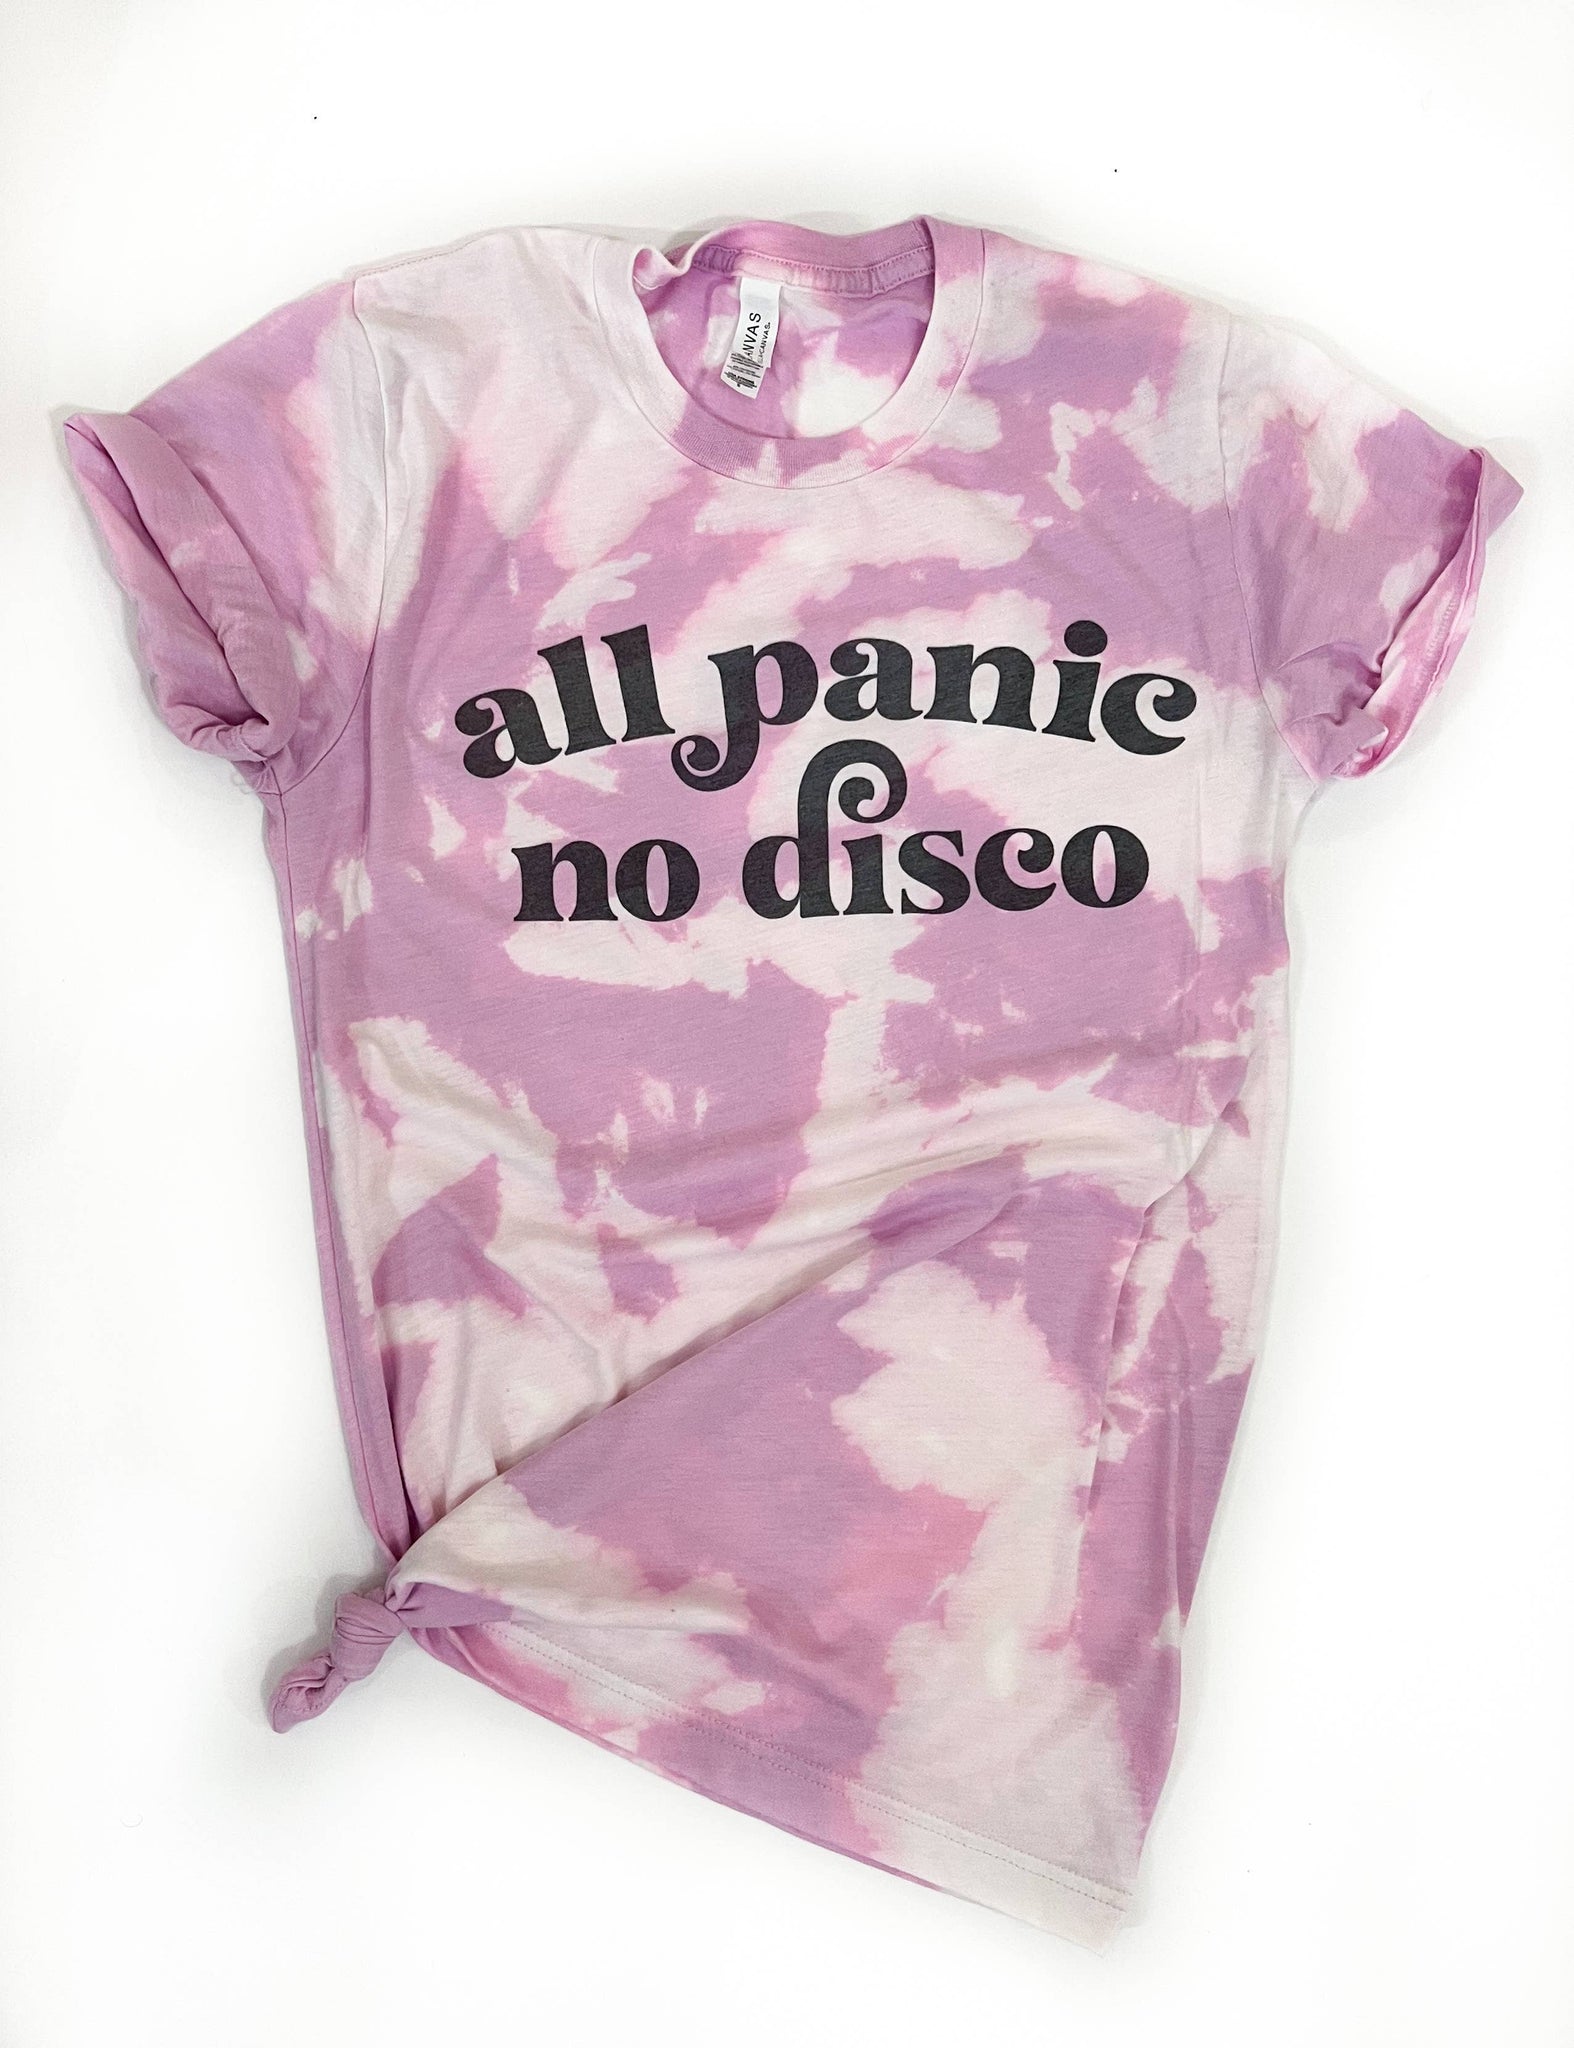 All Panic No Disco Tie Dye Shirt